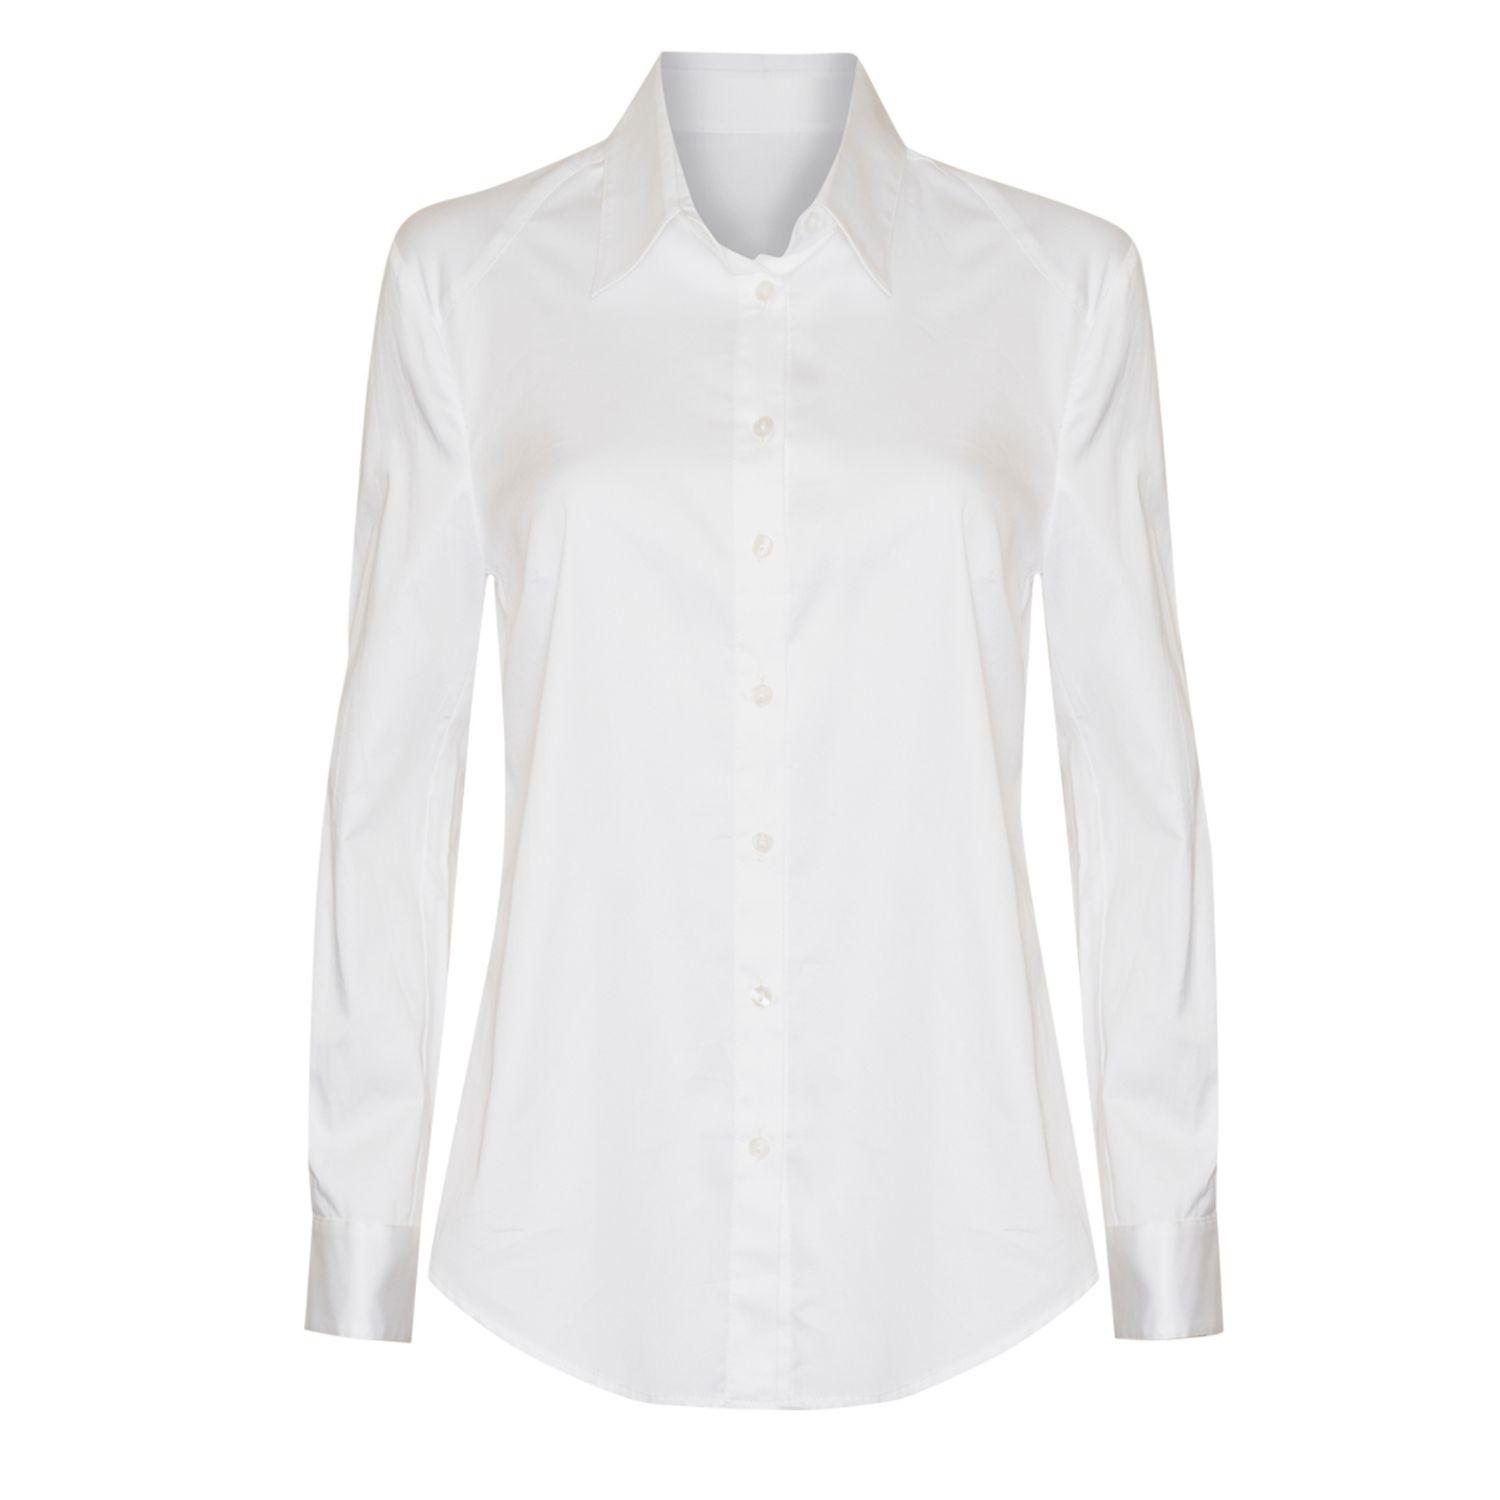 Women’s Classic Shirt In White Extra Small Sacha Drake